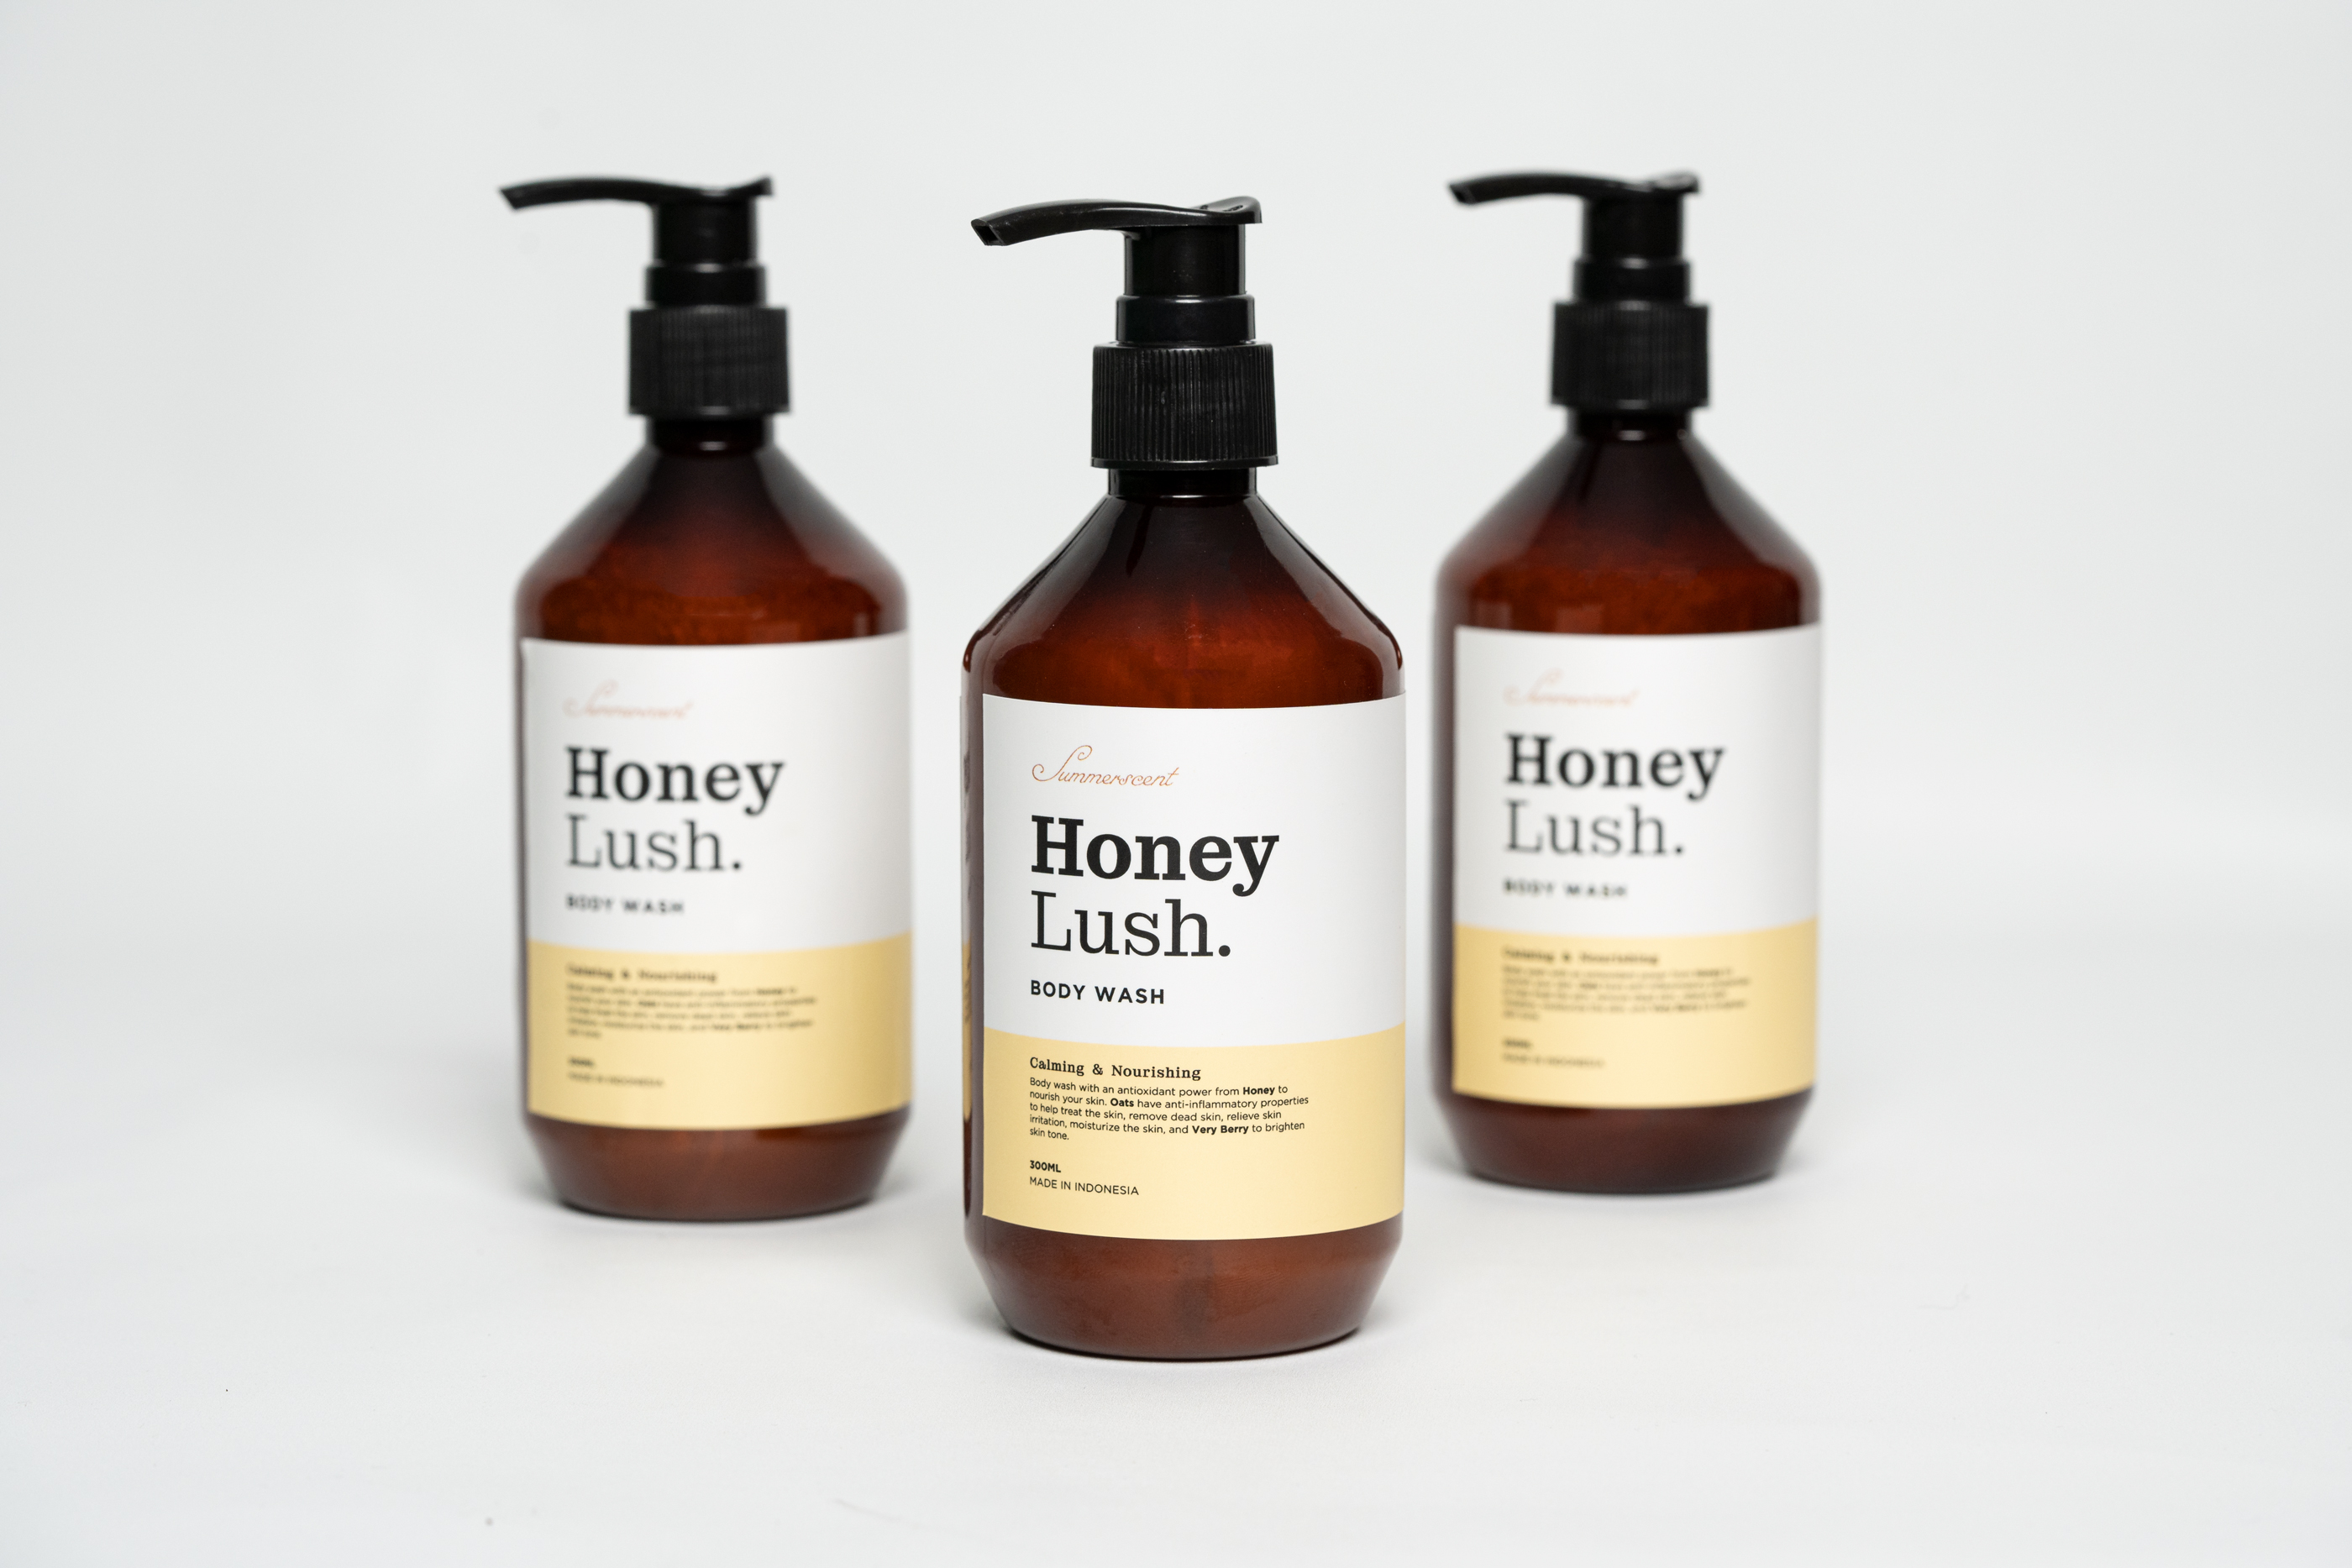  #2 Body wash honey lush